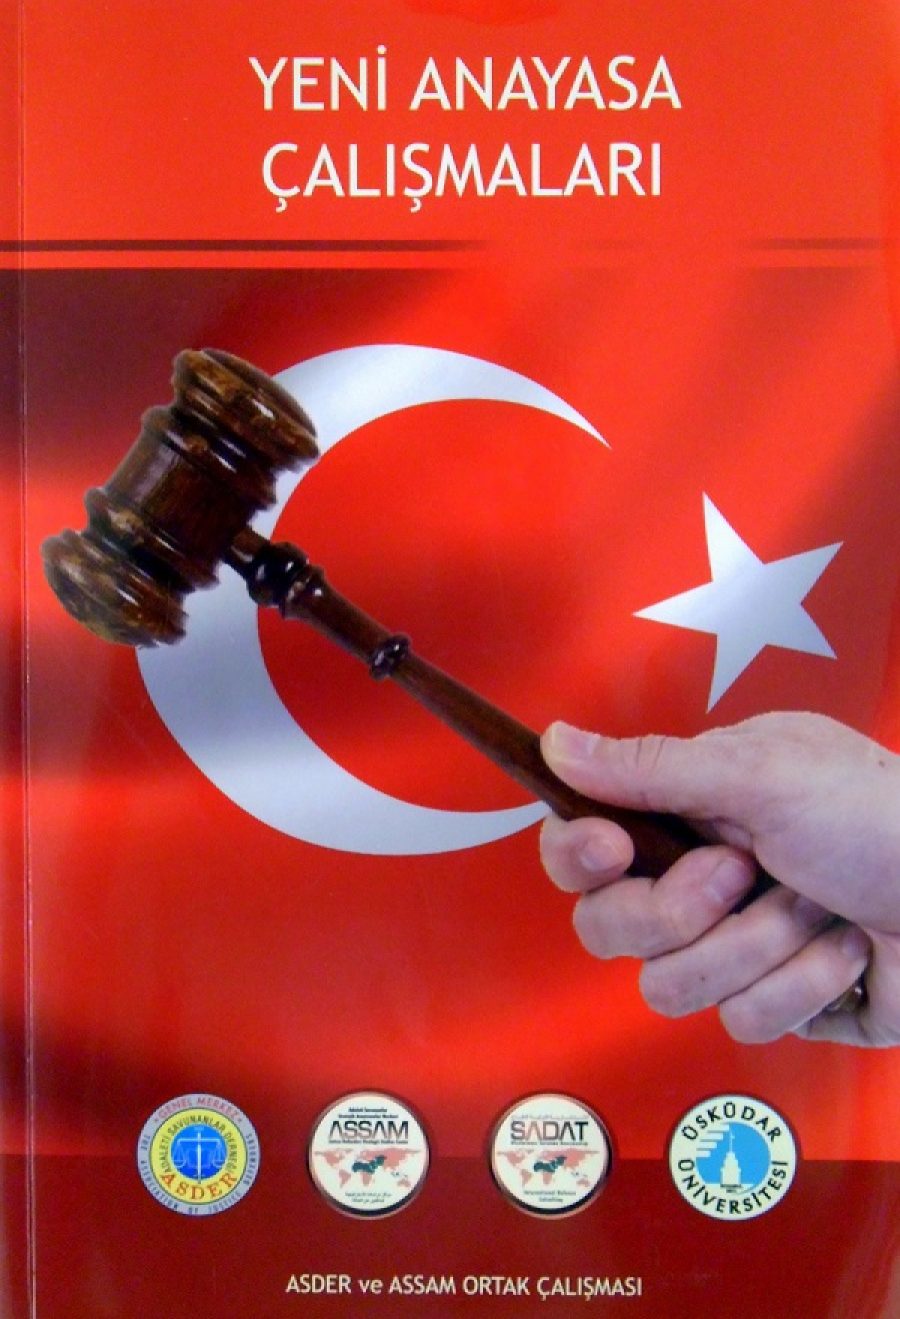 ASSAM Anayasa Önerisi (2011)